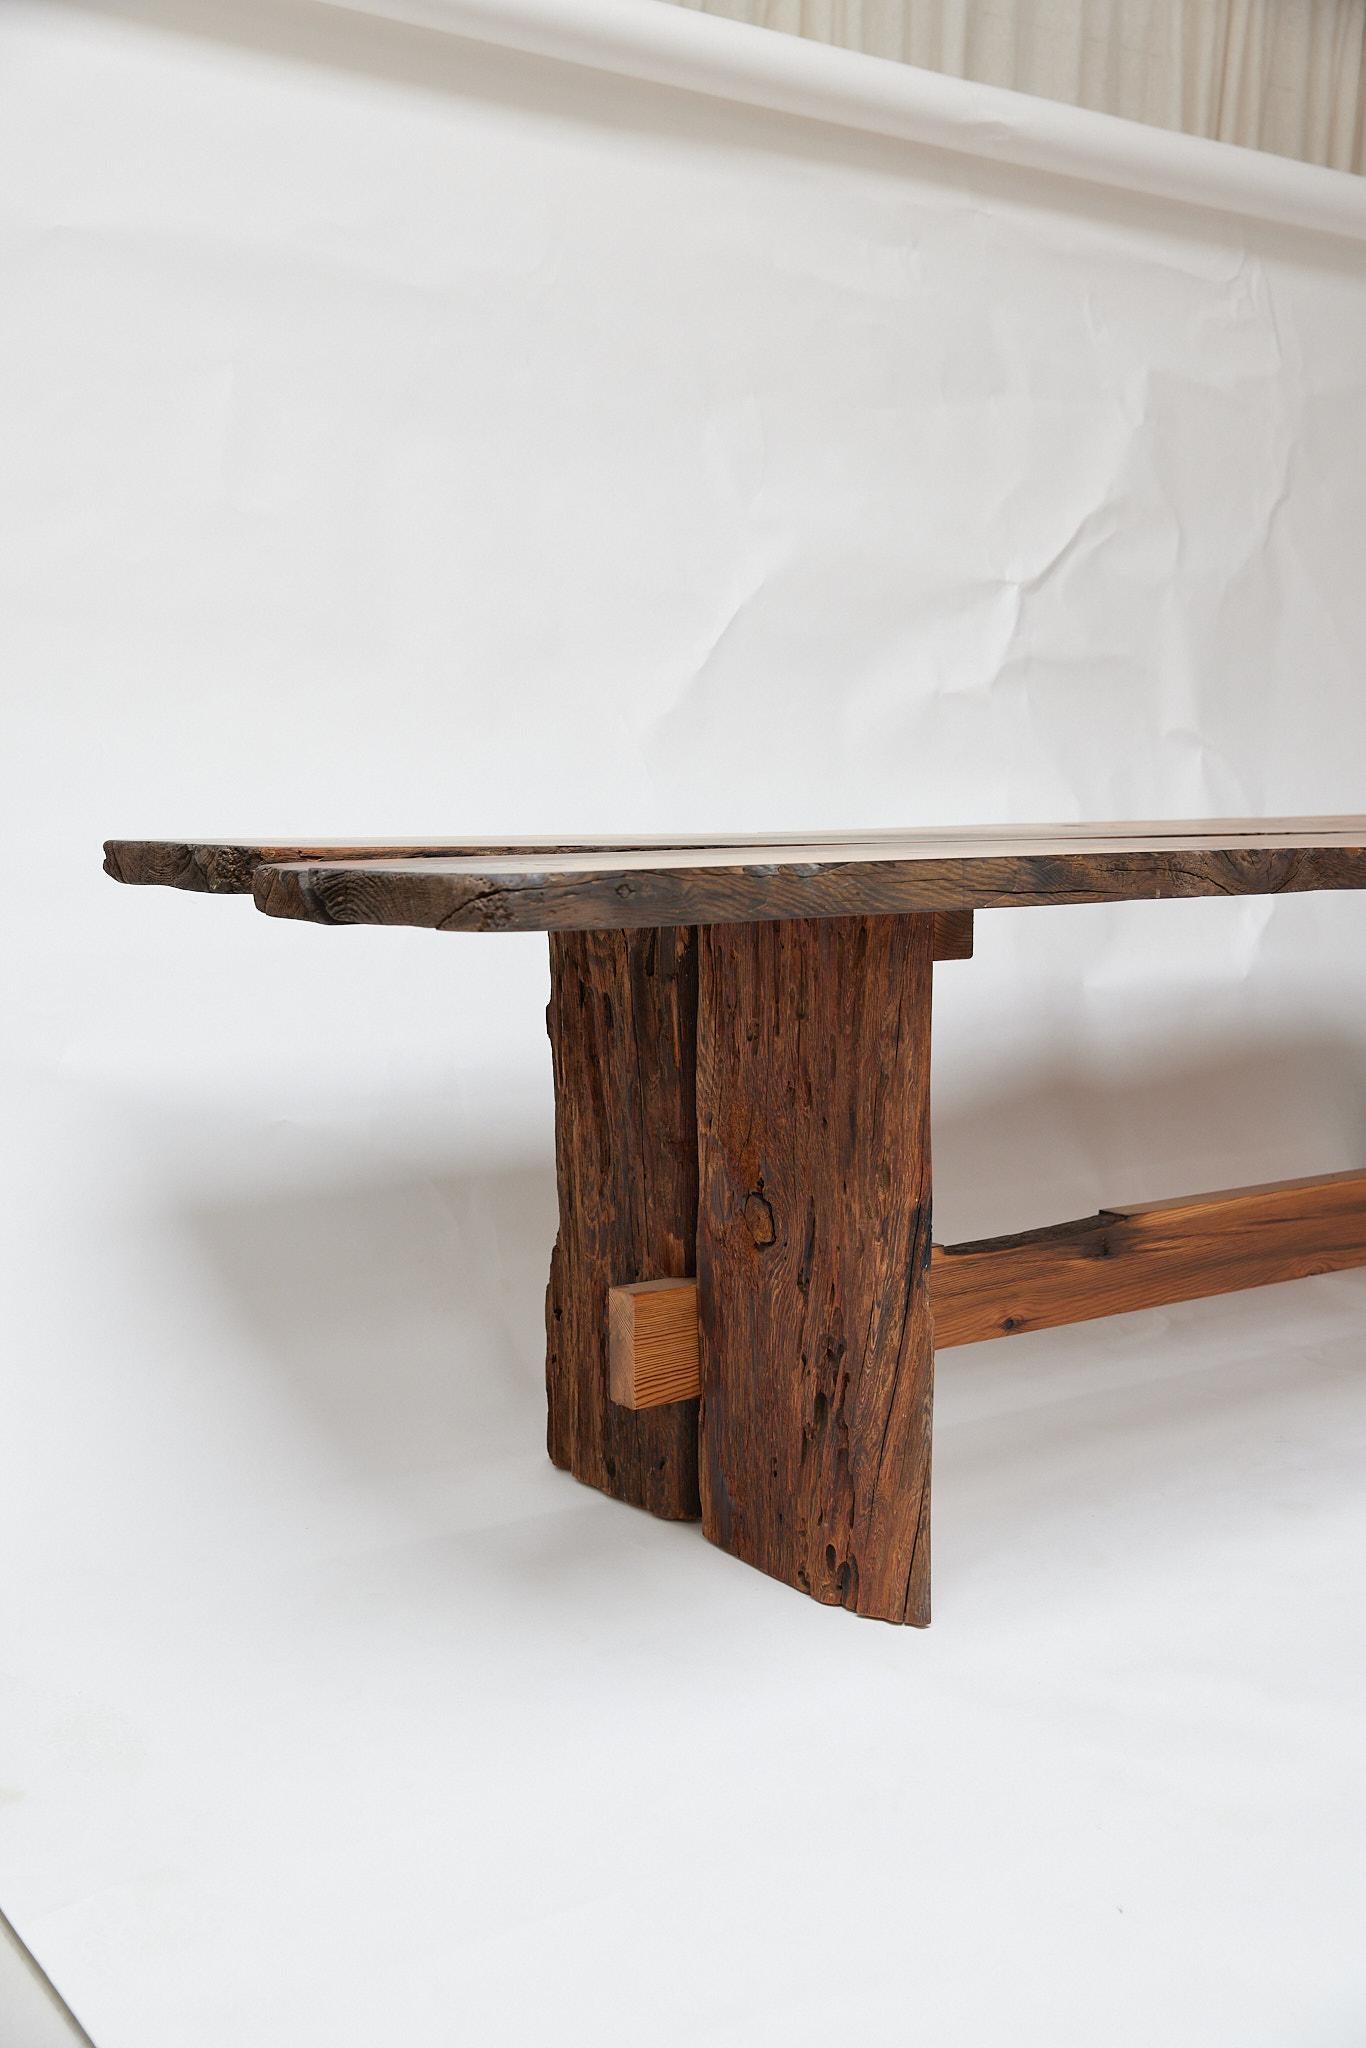 Table en bois unique fabriquée dans l'atelier de l'ébéniste Malte Goermsen, à la périphérie de Copenhague. La table est fabriquée en bois historique,  Pin pomérien,  de 1801. 

Il y a quelques années, l'ébéniste Malte Gormsen est tombé sur des piles